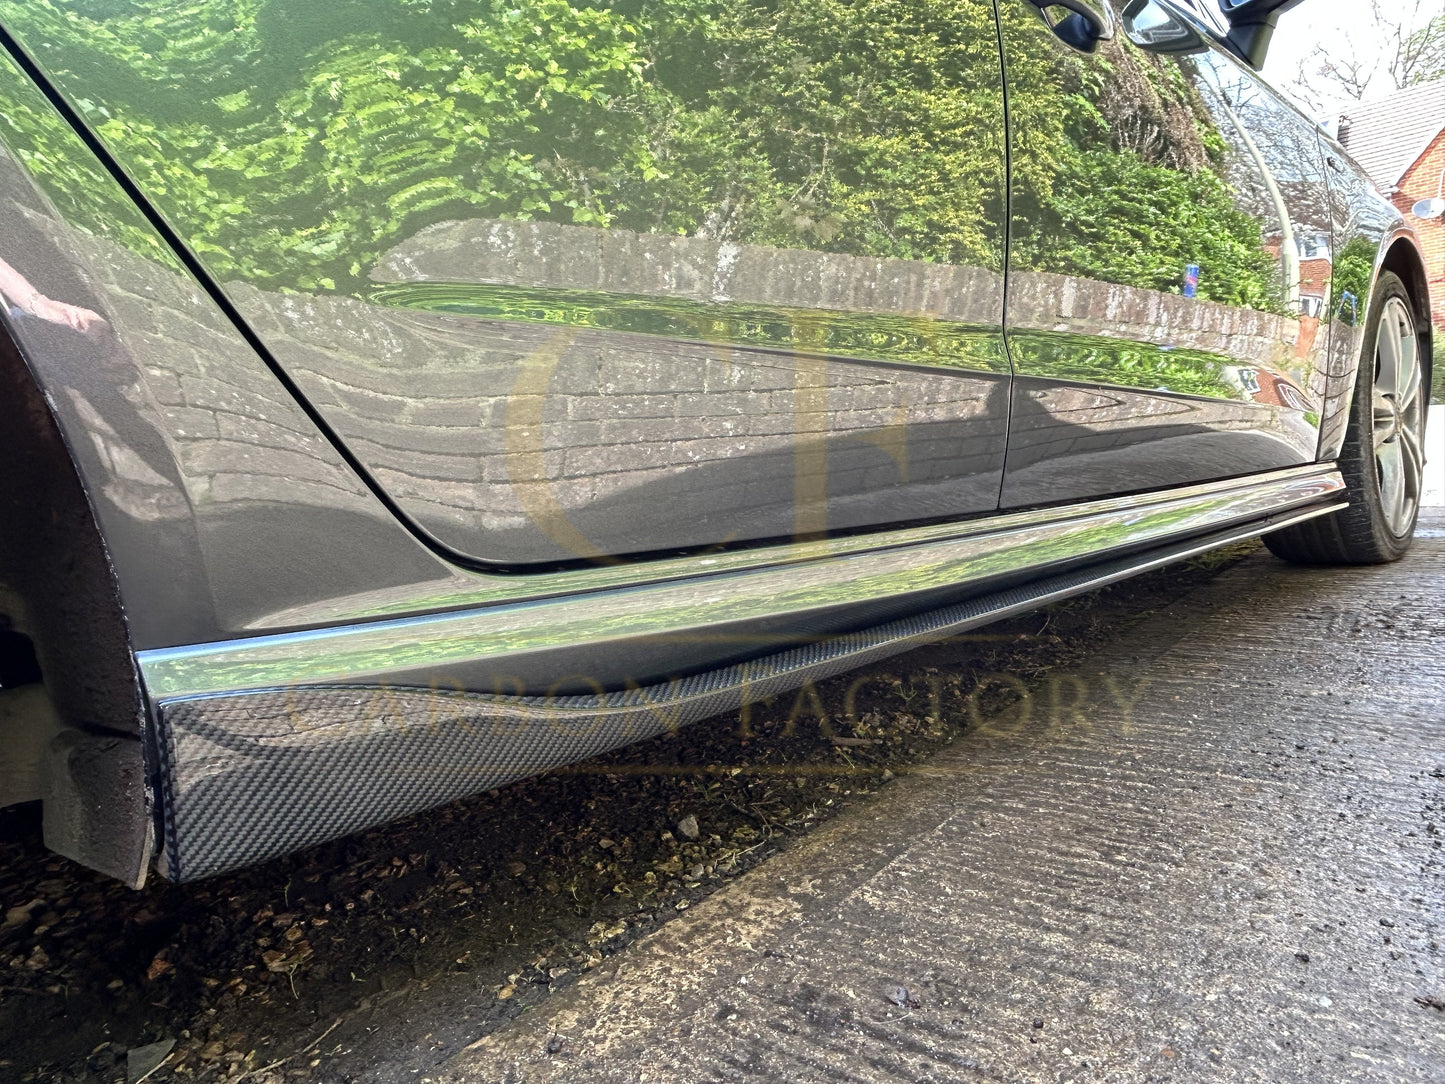 Audi A3 Hatchback S Line V Style Carbon Fibre Side Skirt 13-15-Carbon Factory